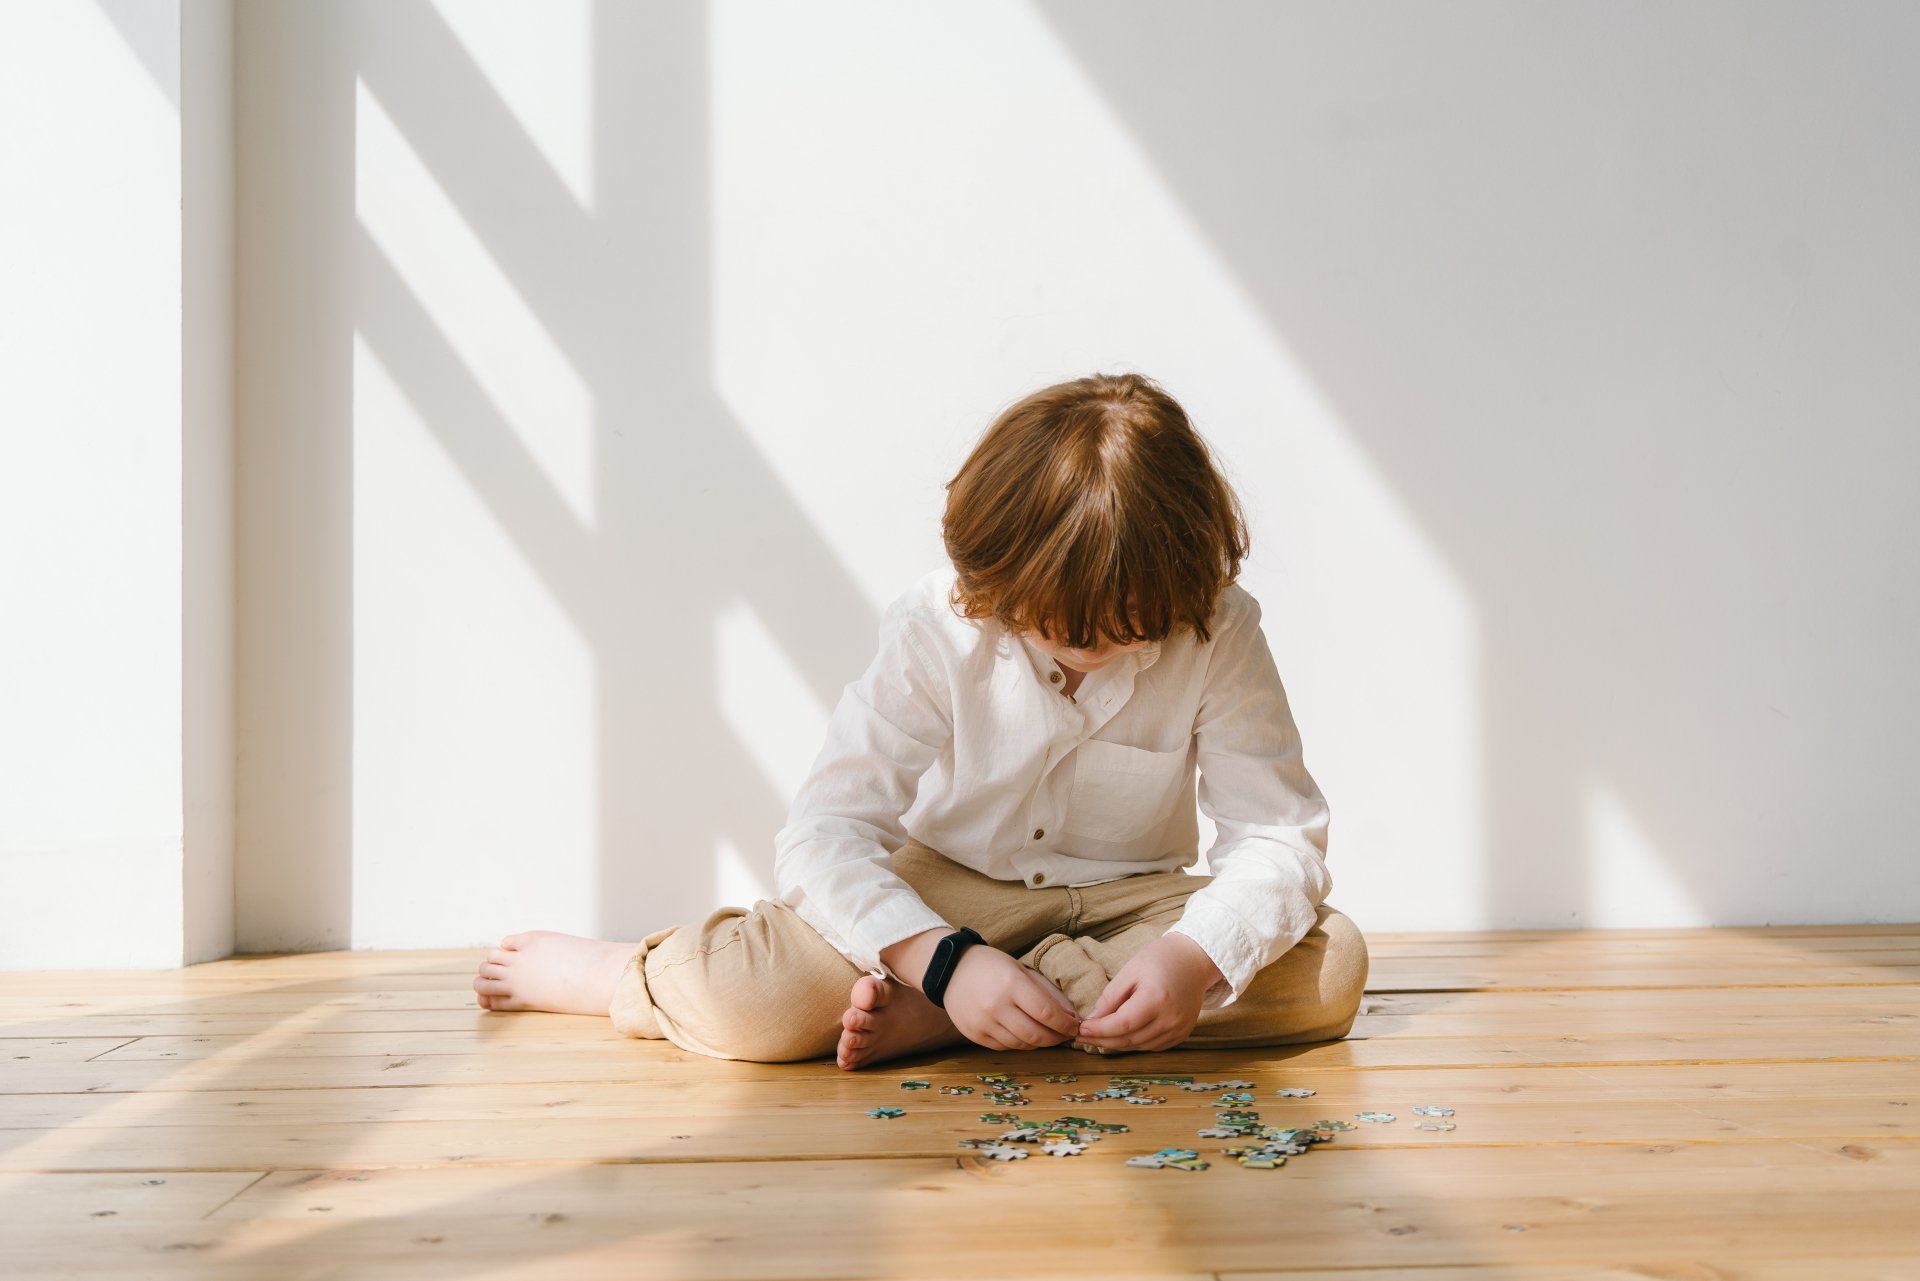 Como Identificar os Sinais de Autismo na Criança?